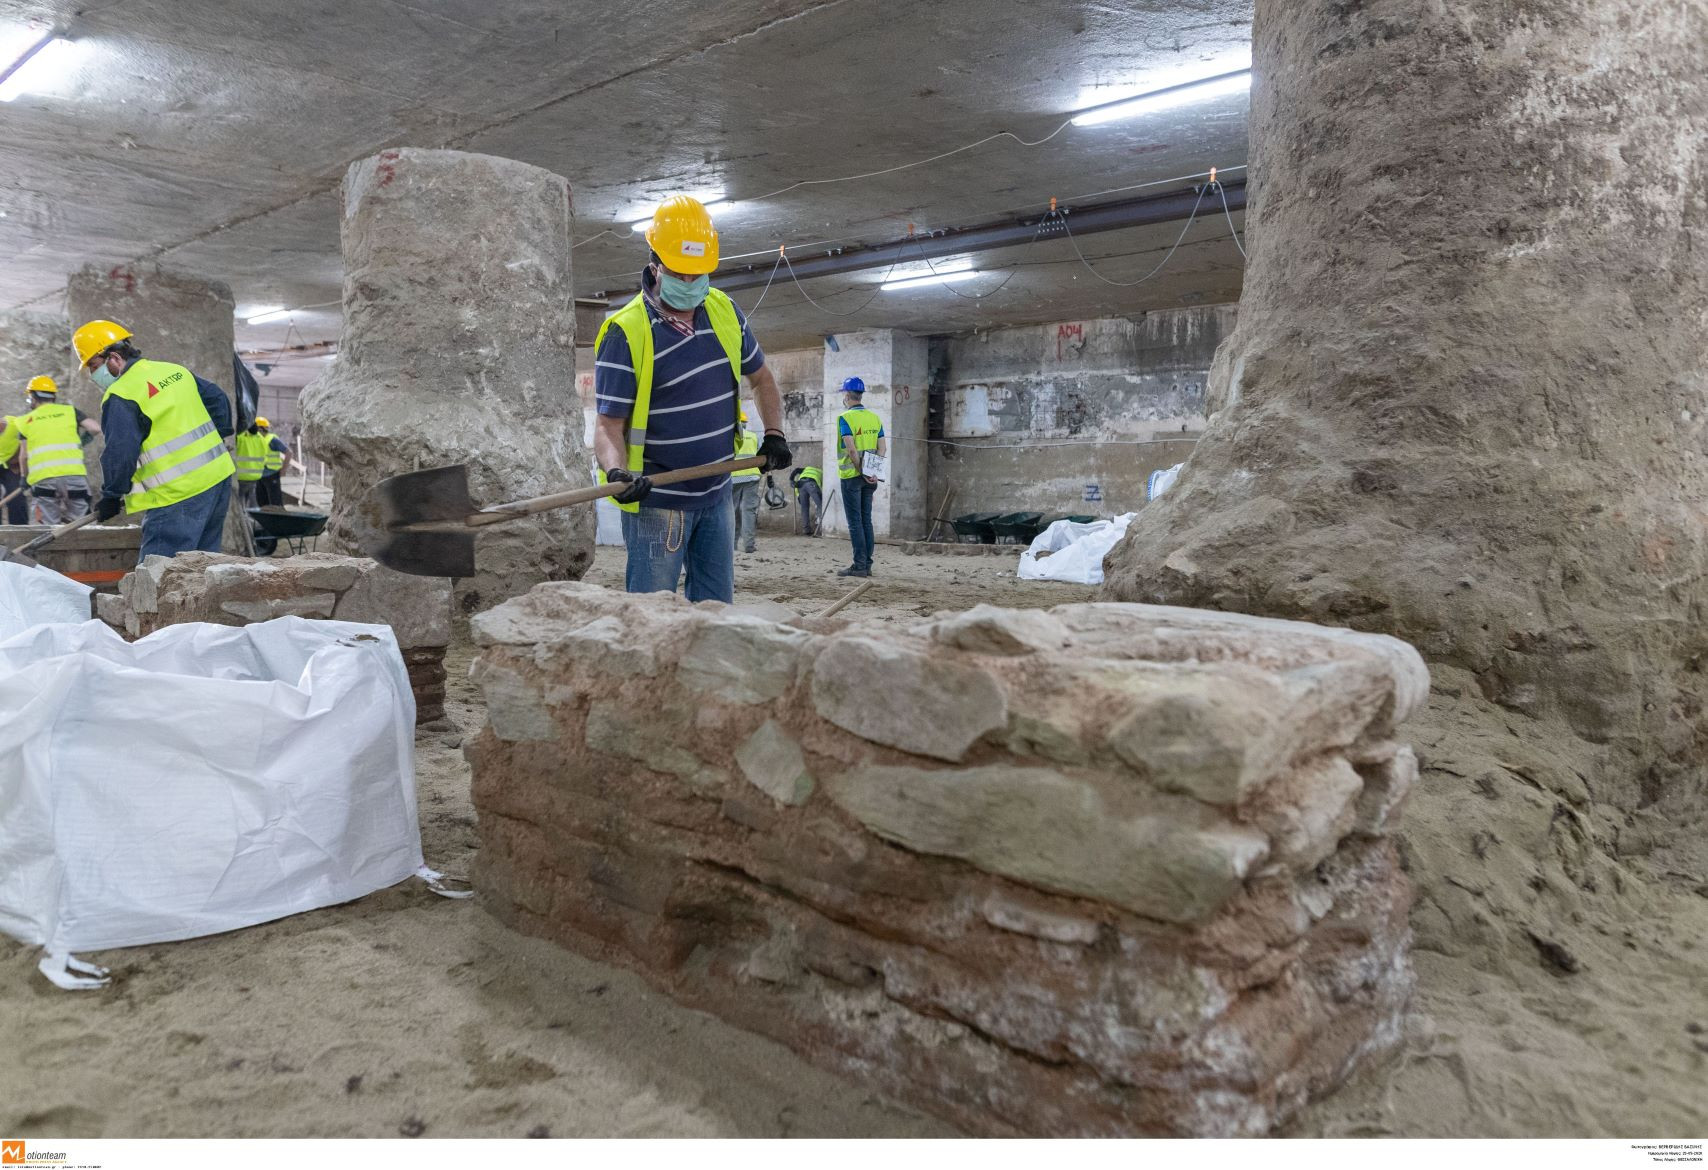 Σύλλογος Εκτάκτων Αρχαιολόγων: Δεν θα γίνουμε συνεργοί στο αρχαιολογικό τους έγκλημα